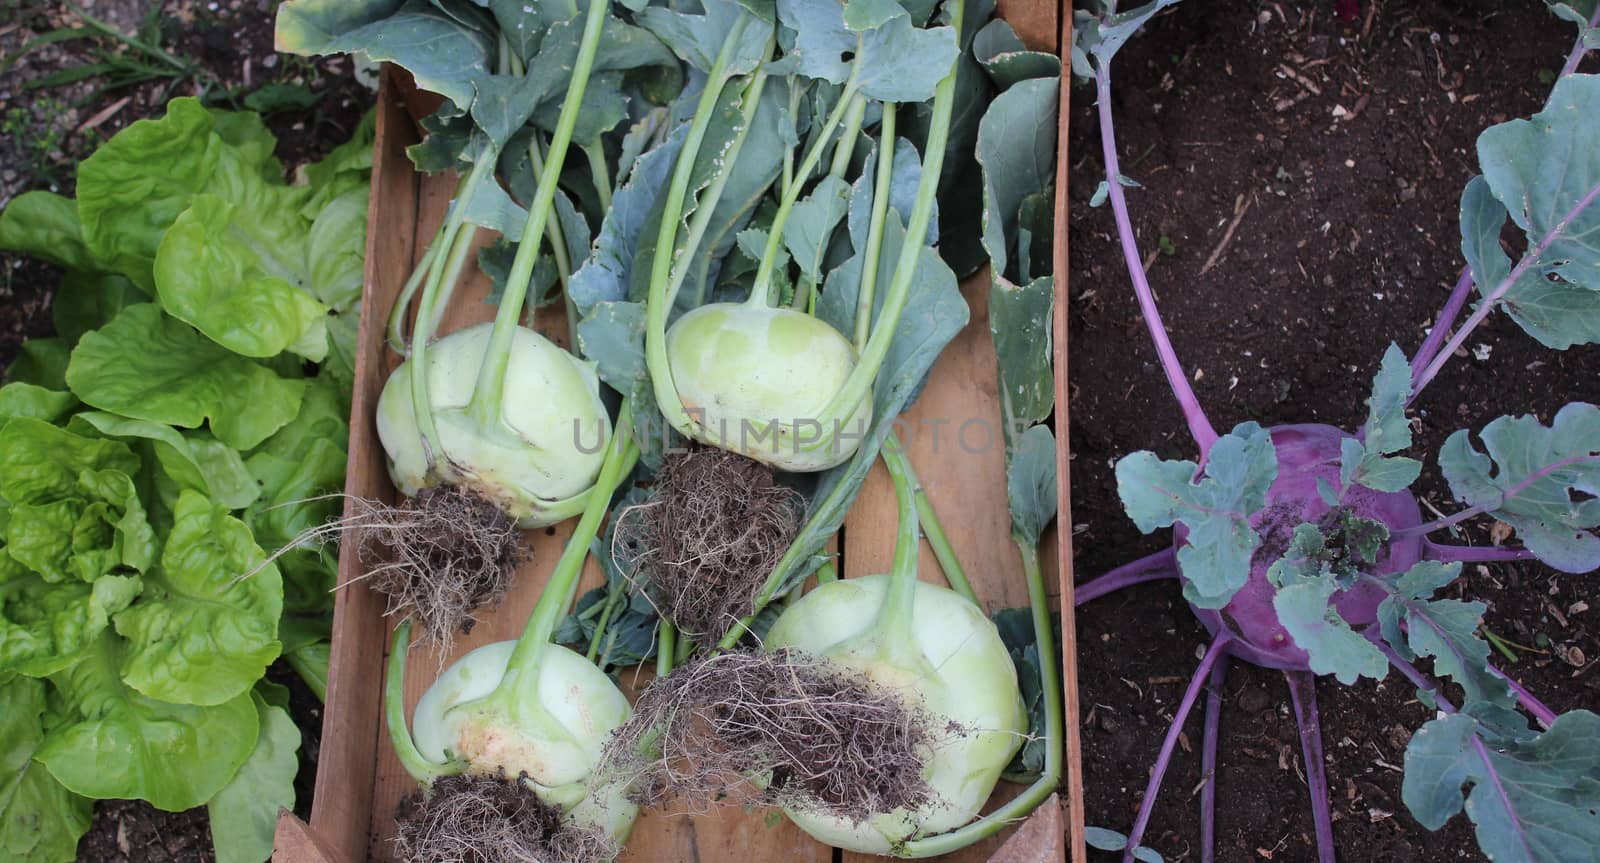 cabbage turnip in the garden by martina_unbehauen